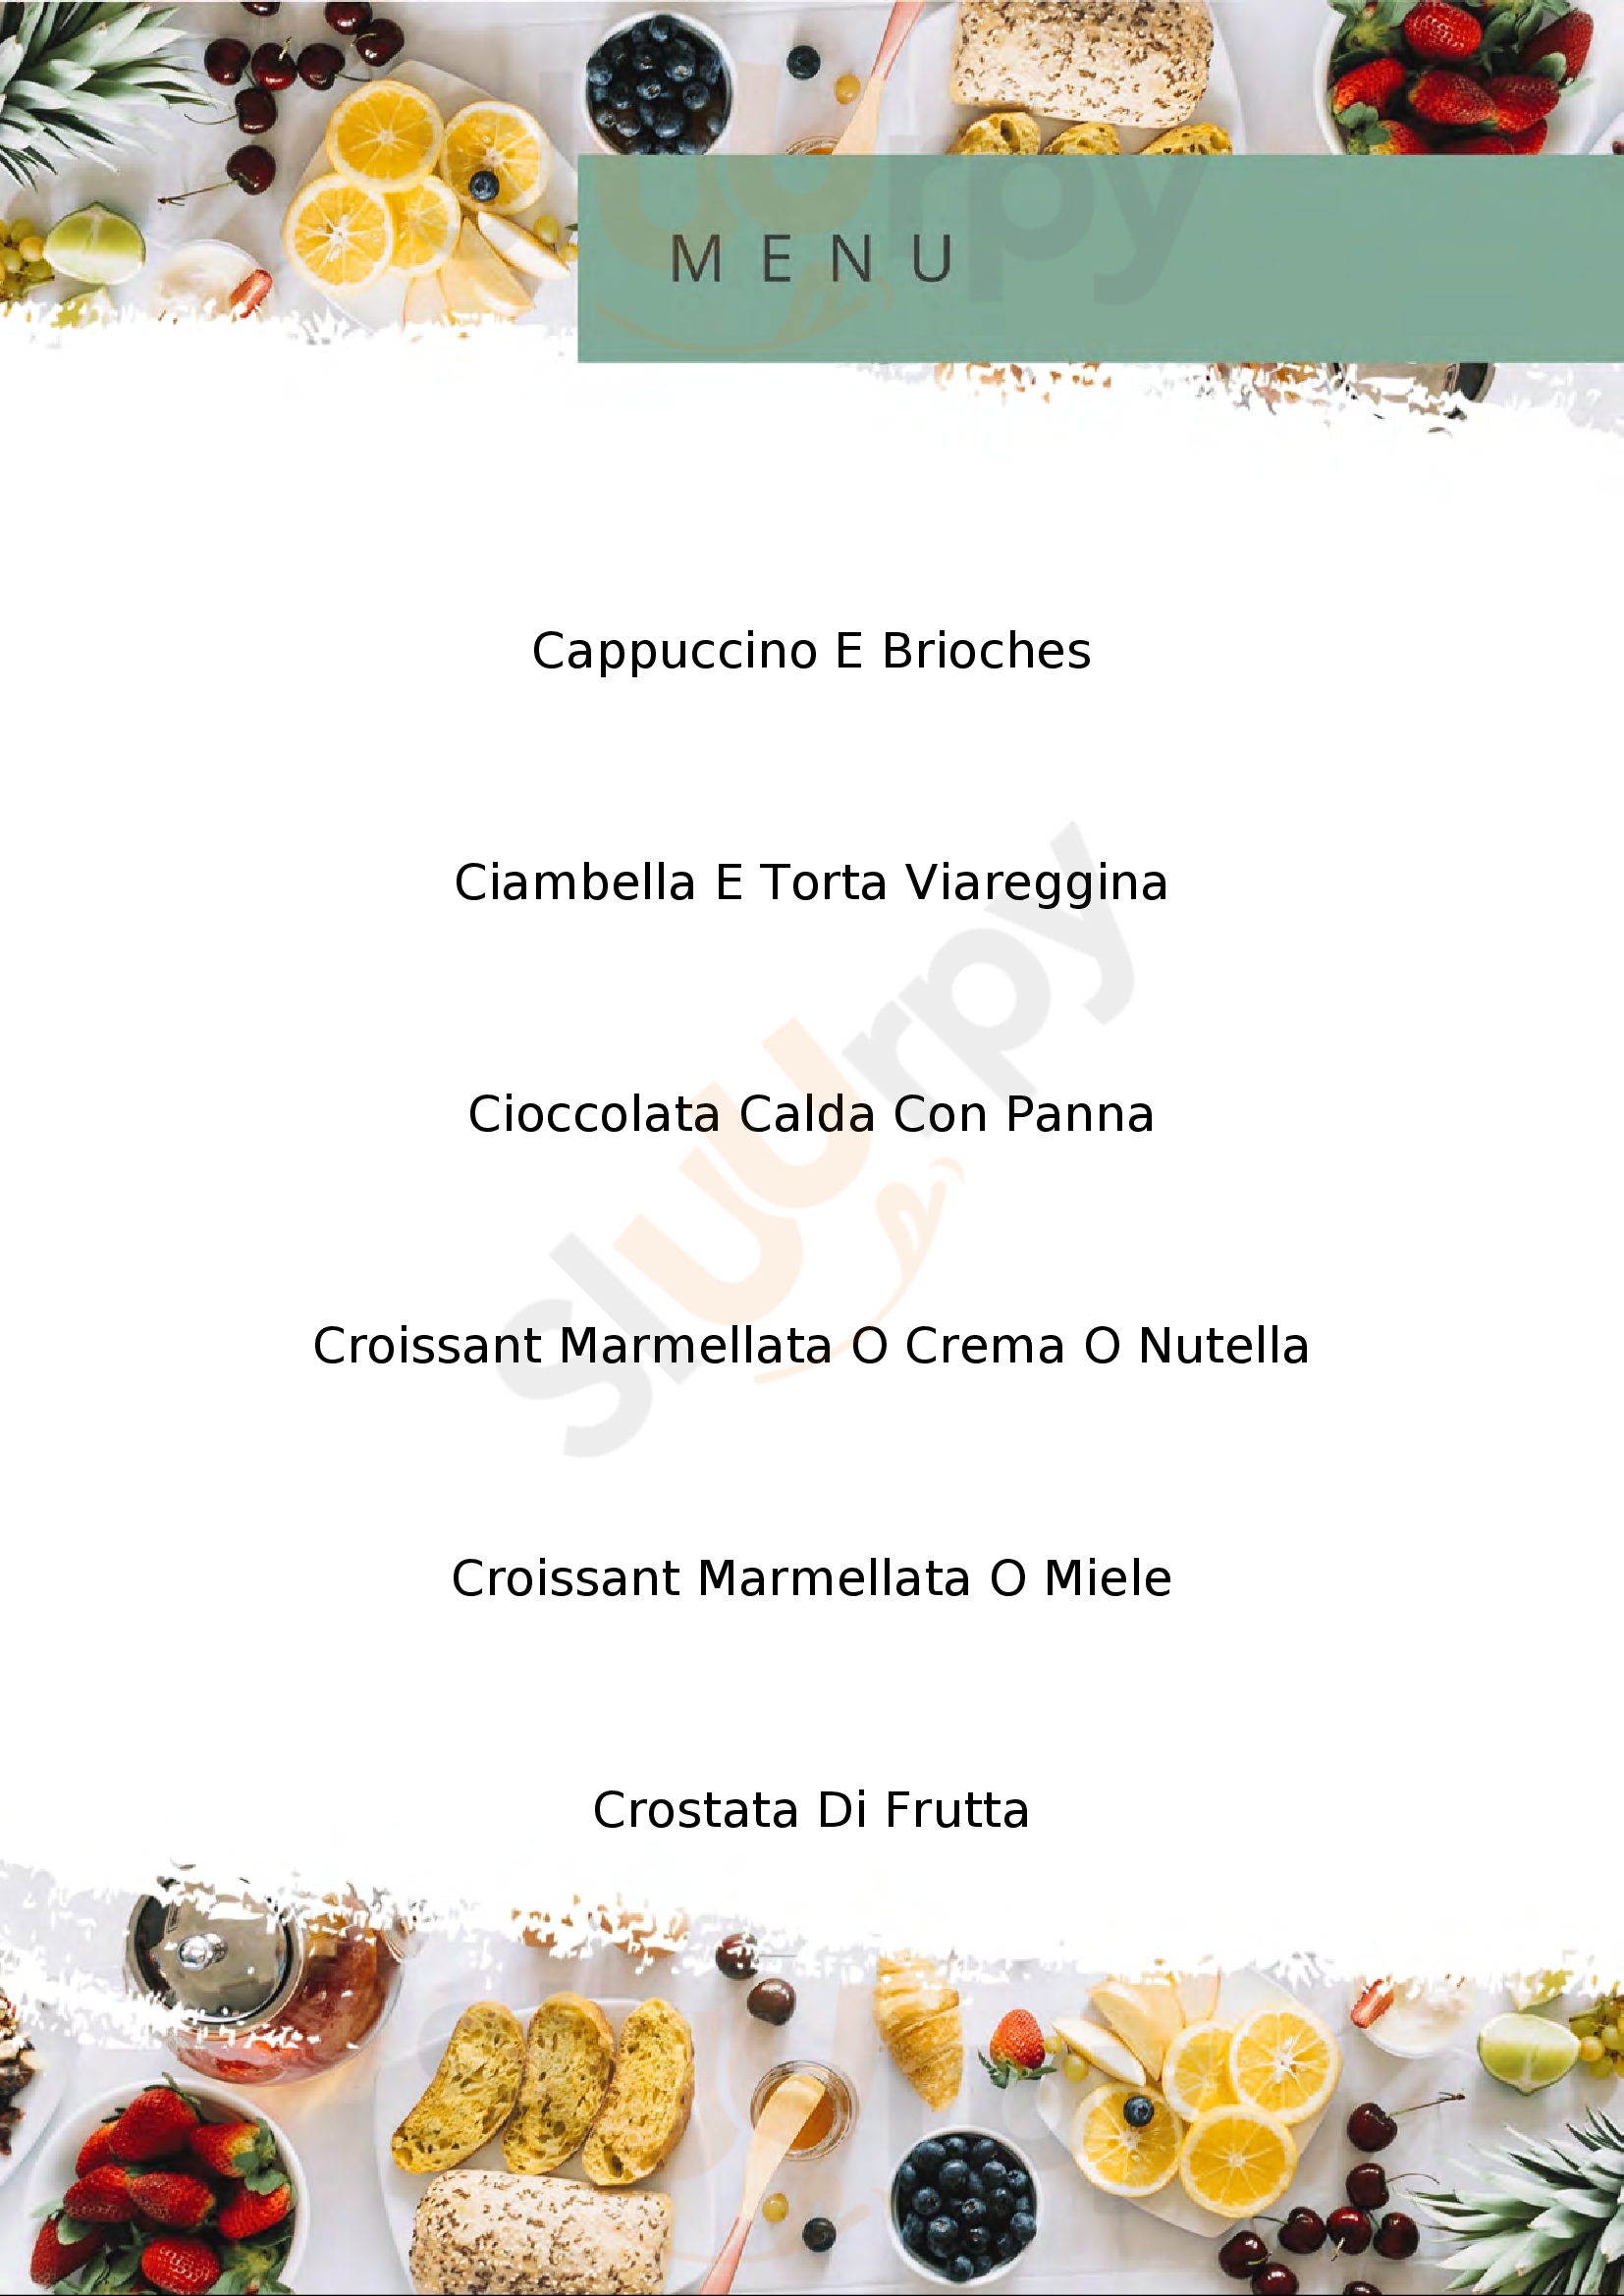 Pasticceria Puccinelli Viareggio menù 1 pagina